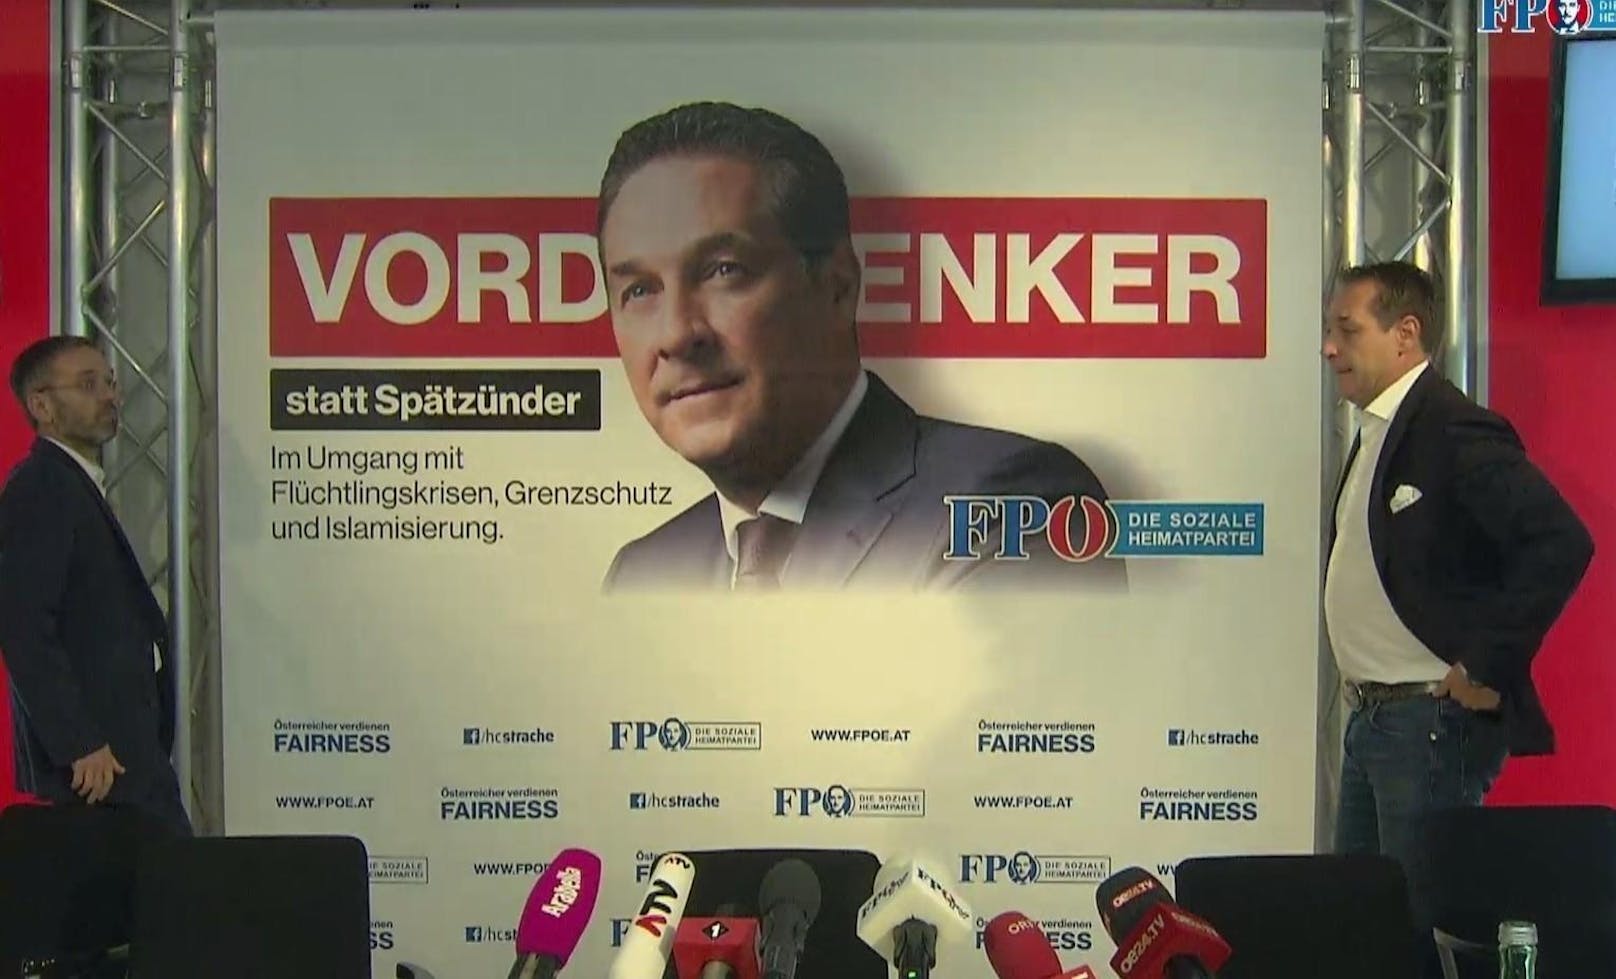 Die FPÖ stellt am Montag ihre neuen Plakate vor.